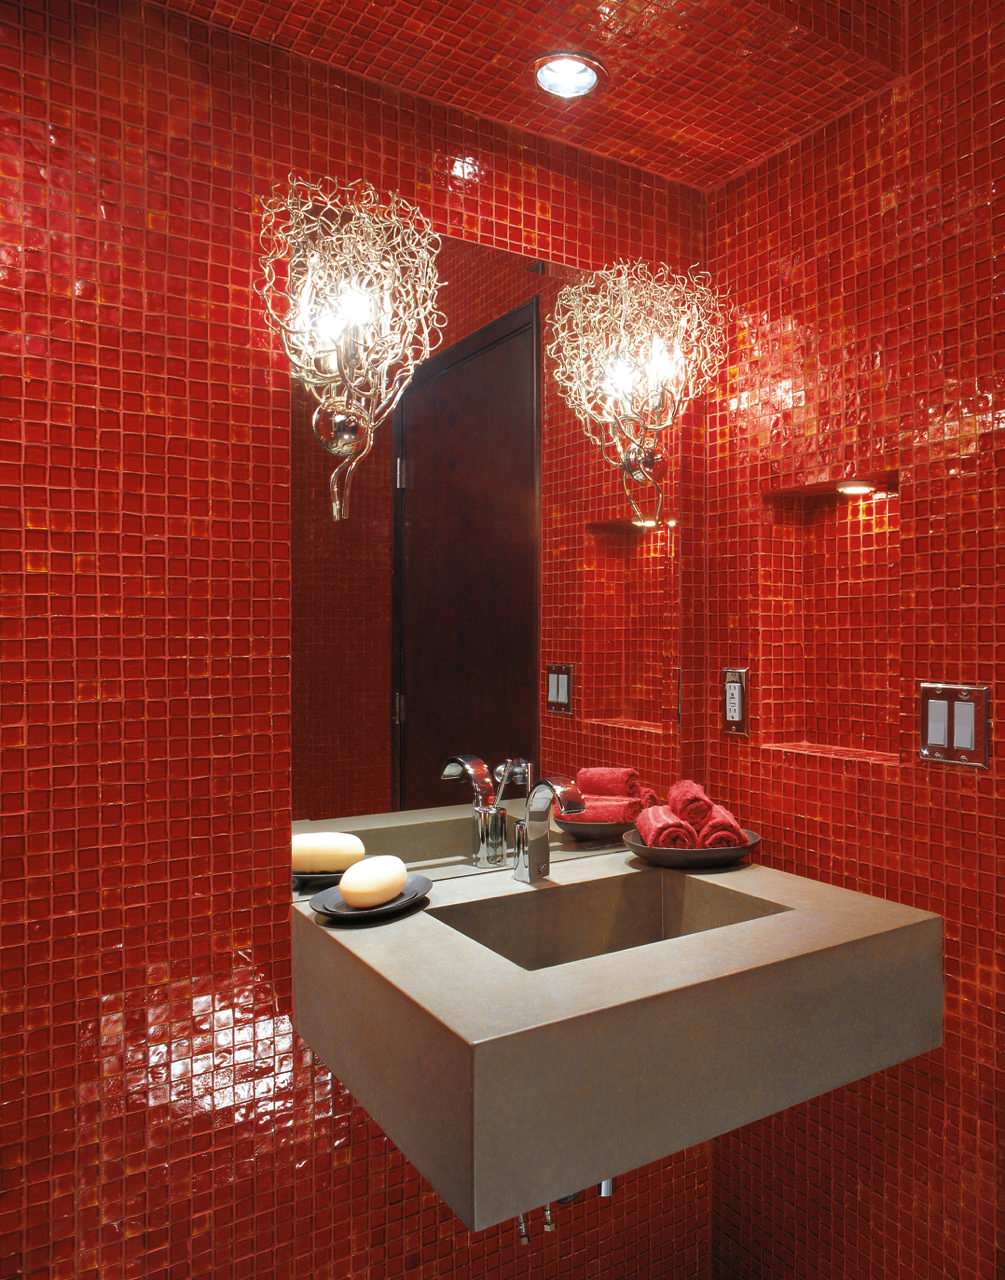 Красная плитка в ванной plitka vanny ru. Красная мозаика в интерьере. Мозаика в интерьере ванной комнаты. Красная ванная. Красная плитка для ванной.